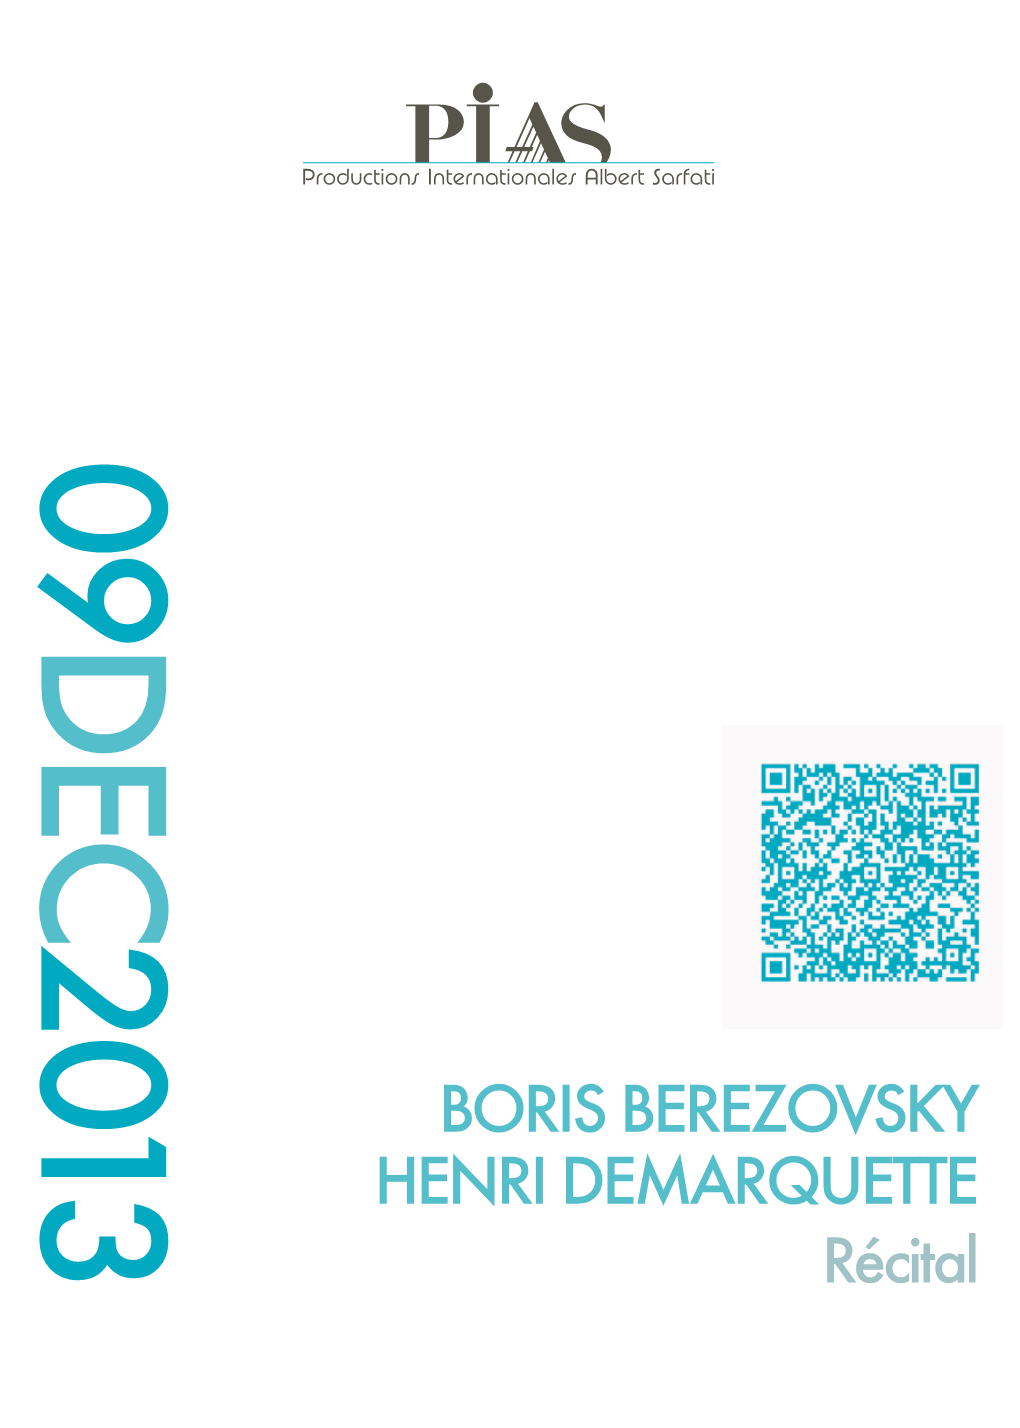 BORIS BEREZOVSKY HENRI DEMARQUETTE Récital © Ludo Leleu Pianoscope 2013 Boris Berezovsky Piano Henri Demarquette Violoncelle